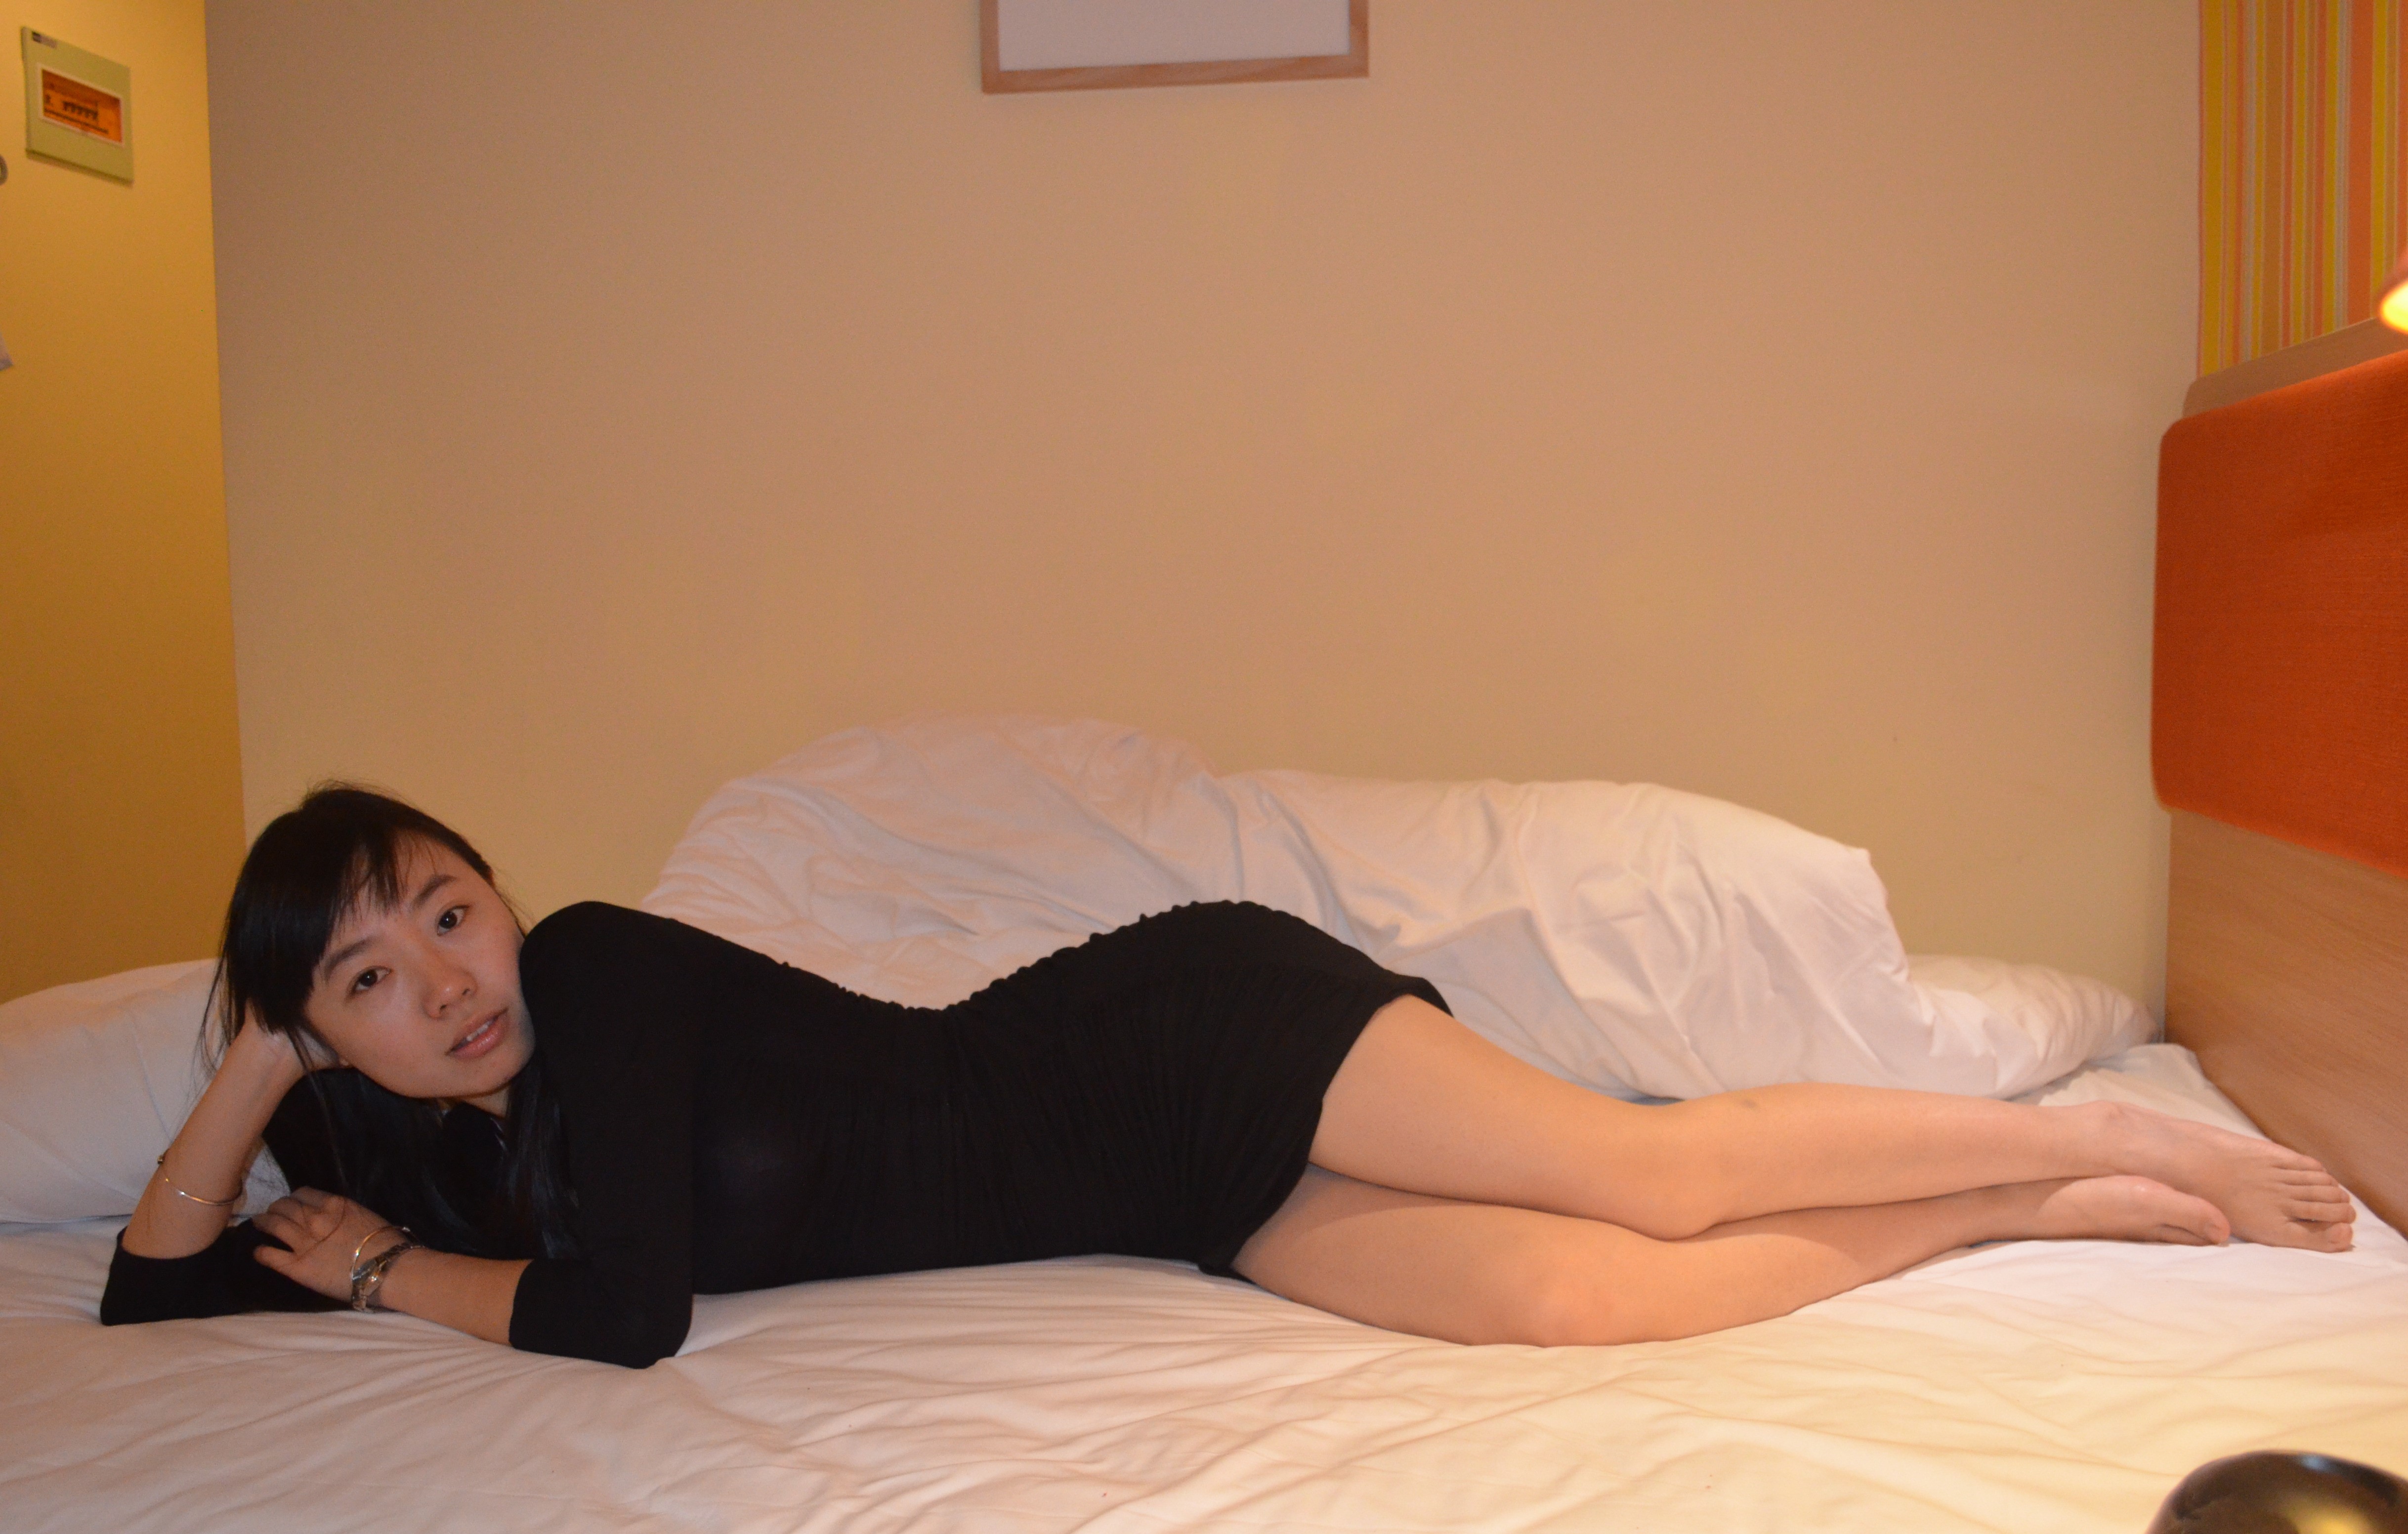 【網路收集】福利姬-小蘋果 氣質人妻在床上等你來臨幸 - 貼圖 - 絲襪美腿 -